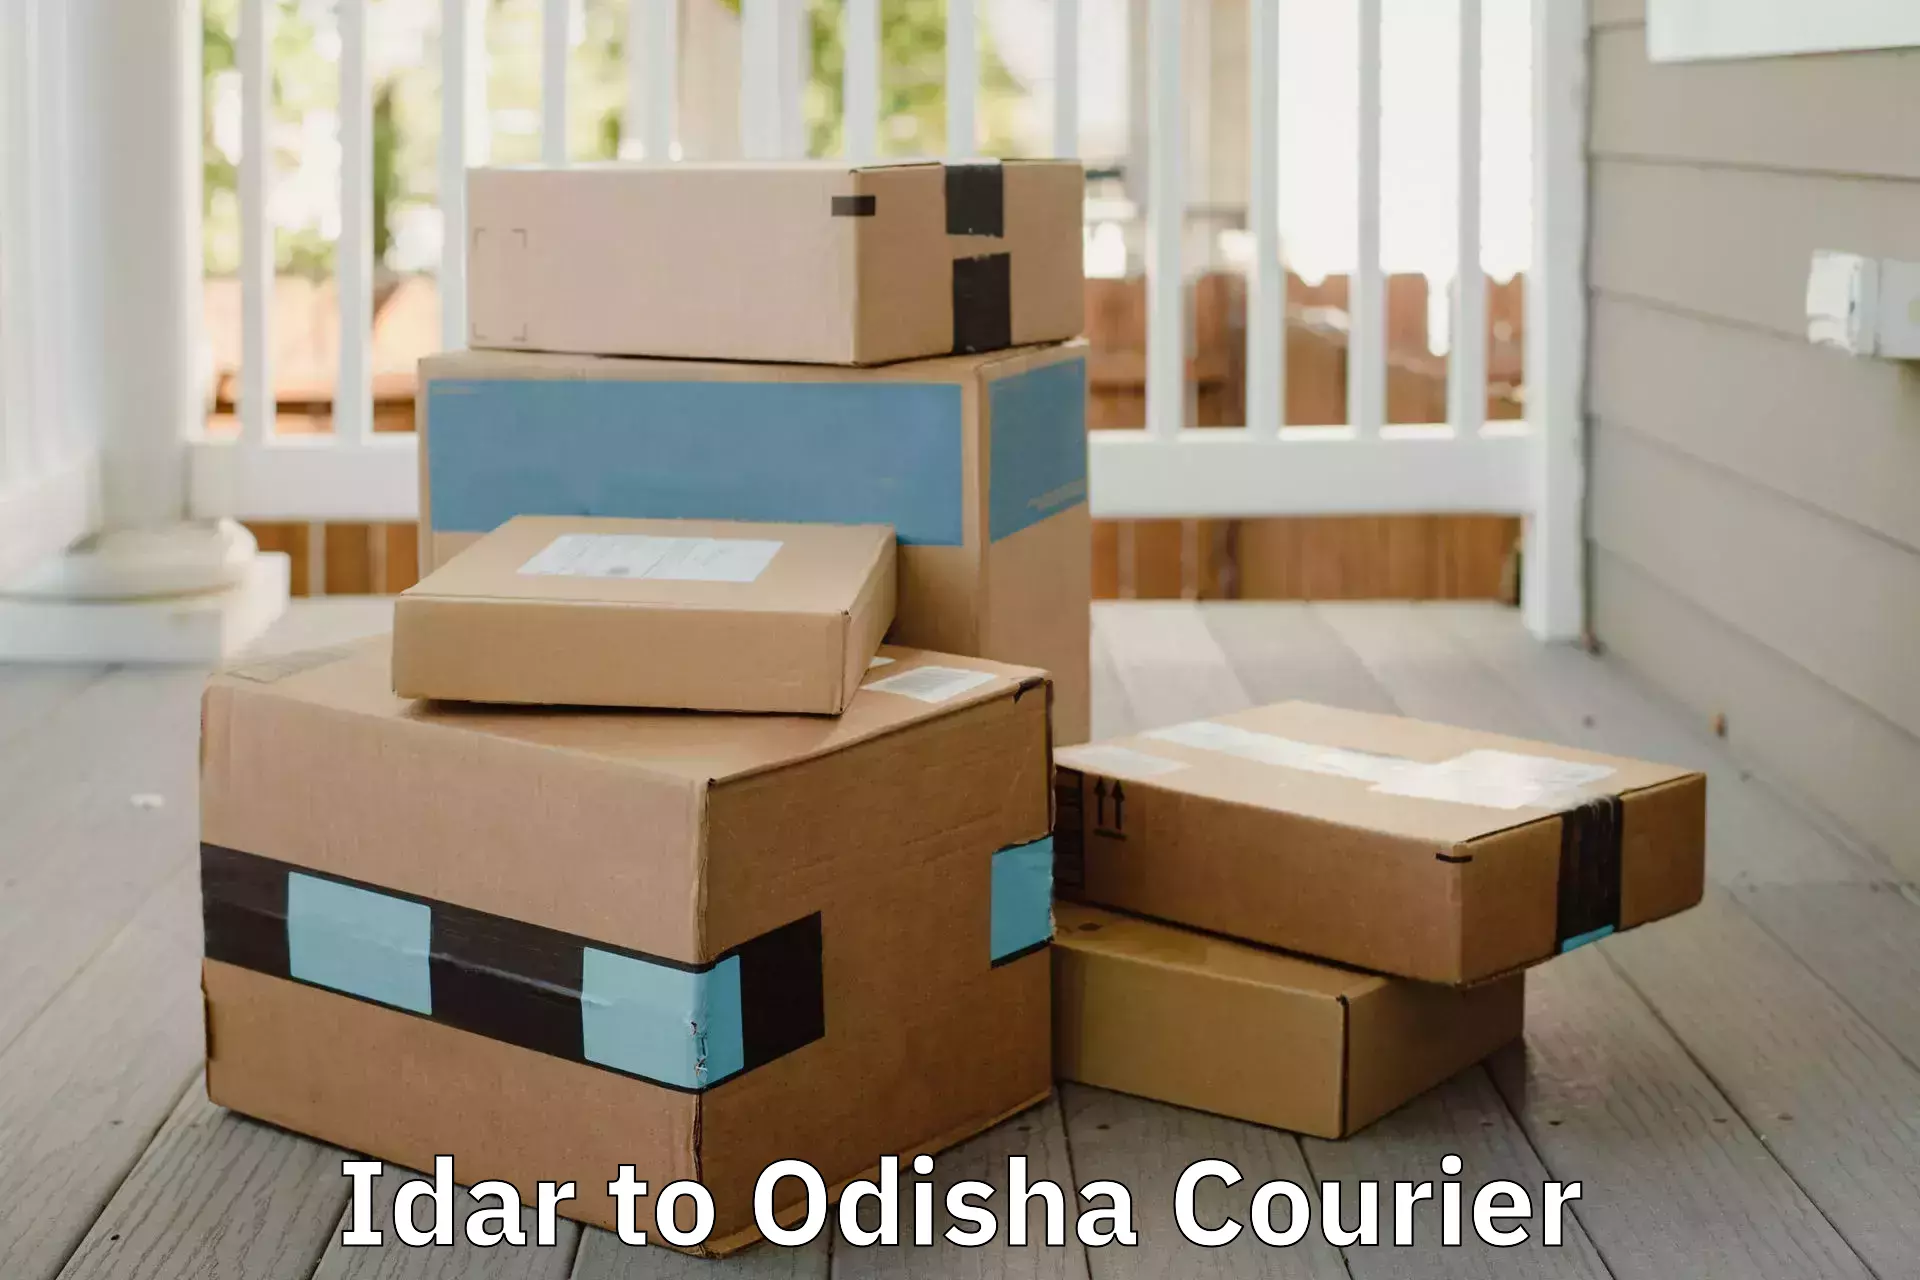 Furniture transport professionals Idar to Odisha